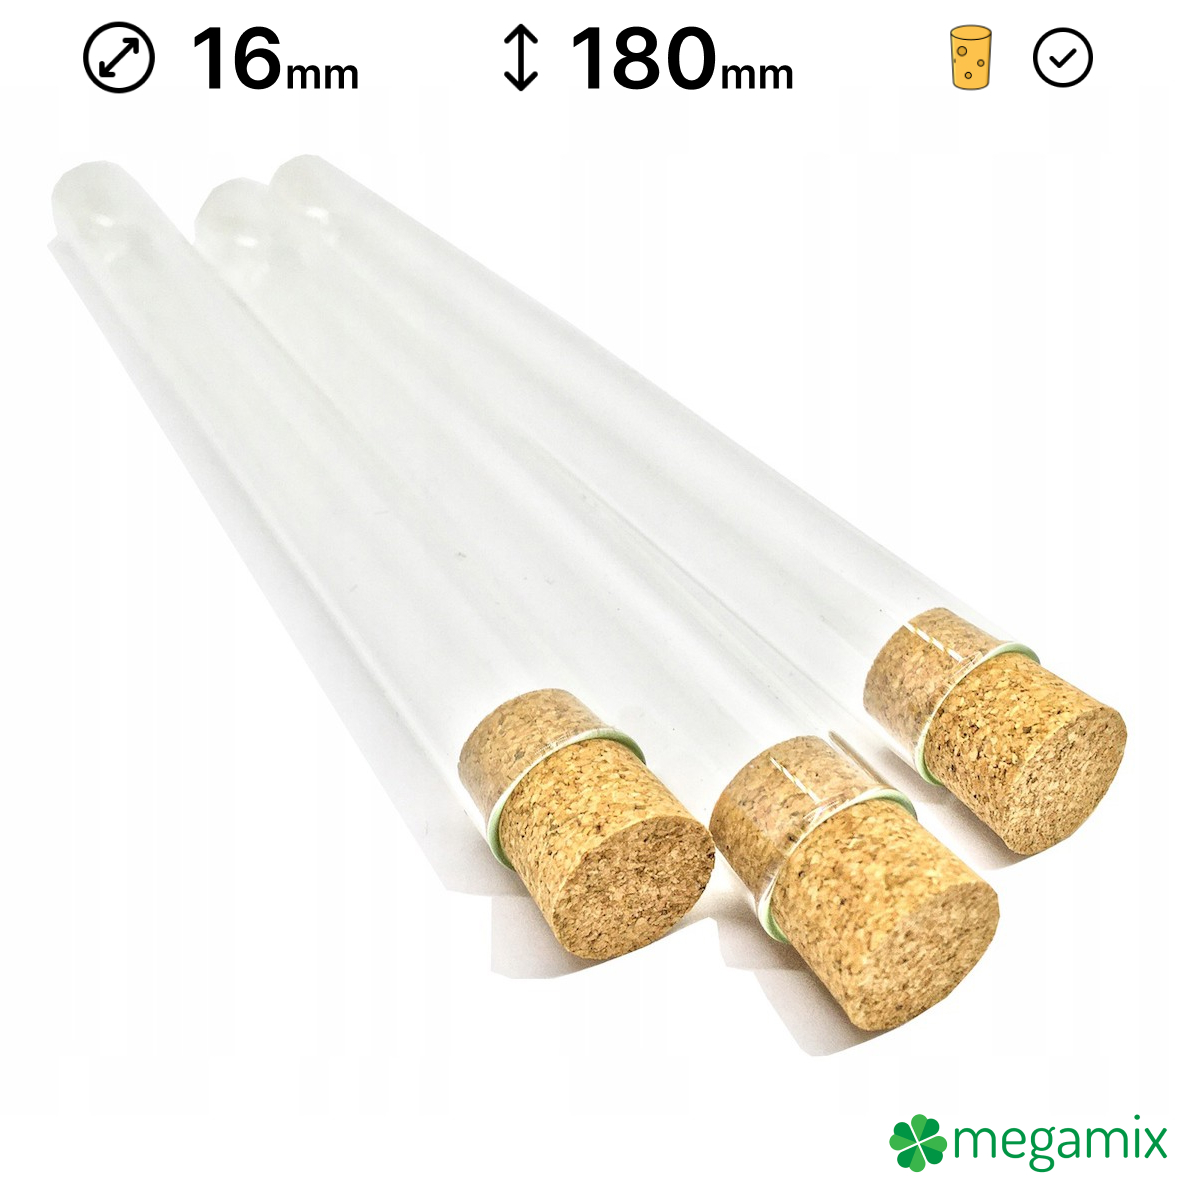 üveg kémcsövek parafával 180mm átmérőjű 16mm 10db omegamix.hu